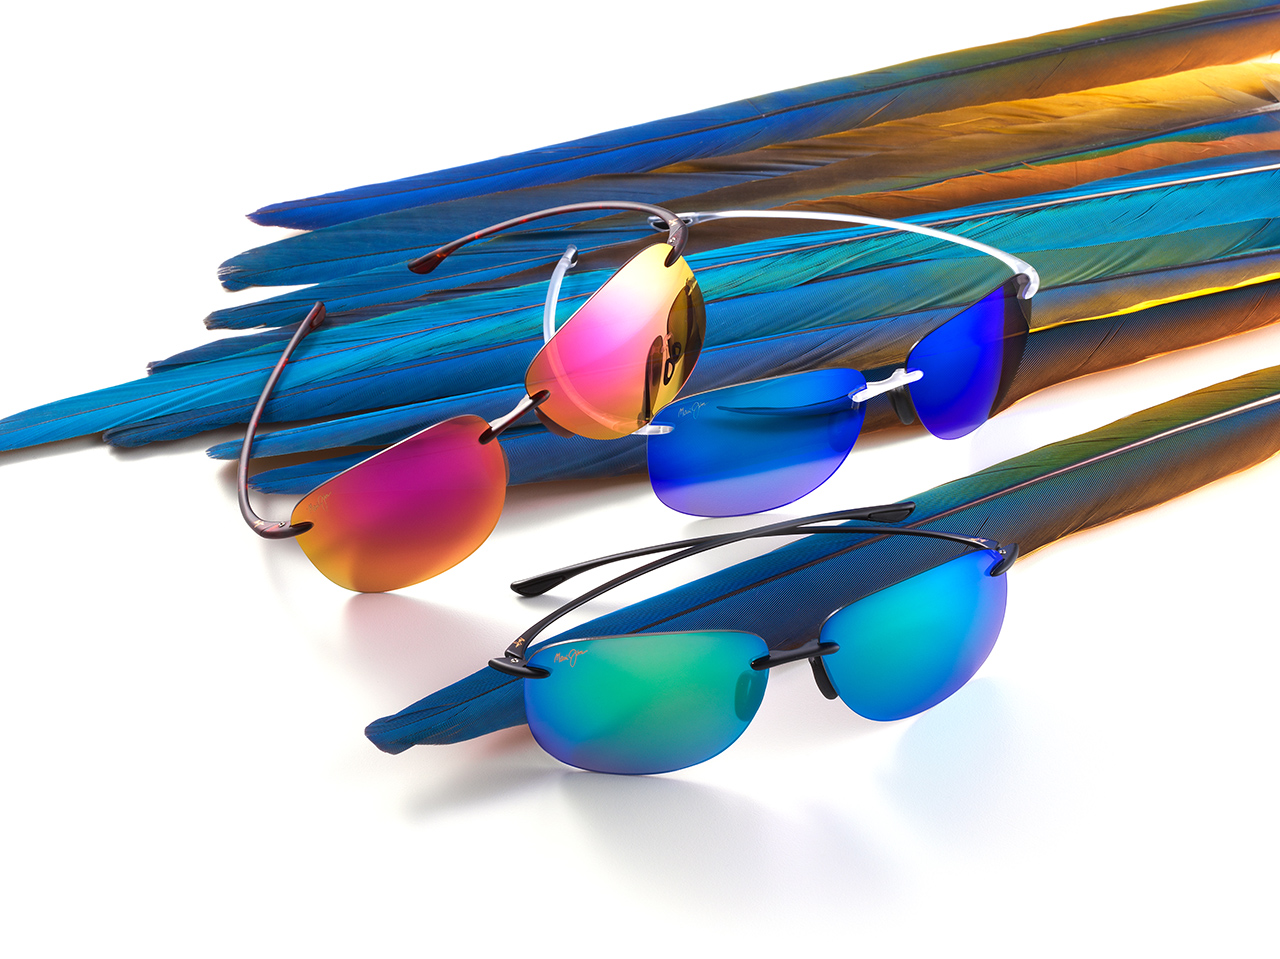 Sunglass Lens Color Guide Live Aloha, Light Mirror Tint Sunglasses